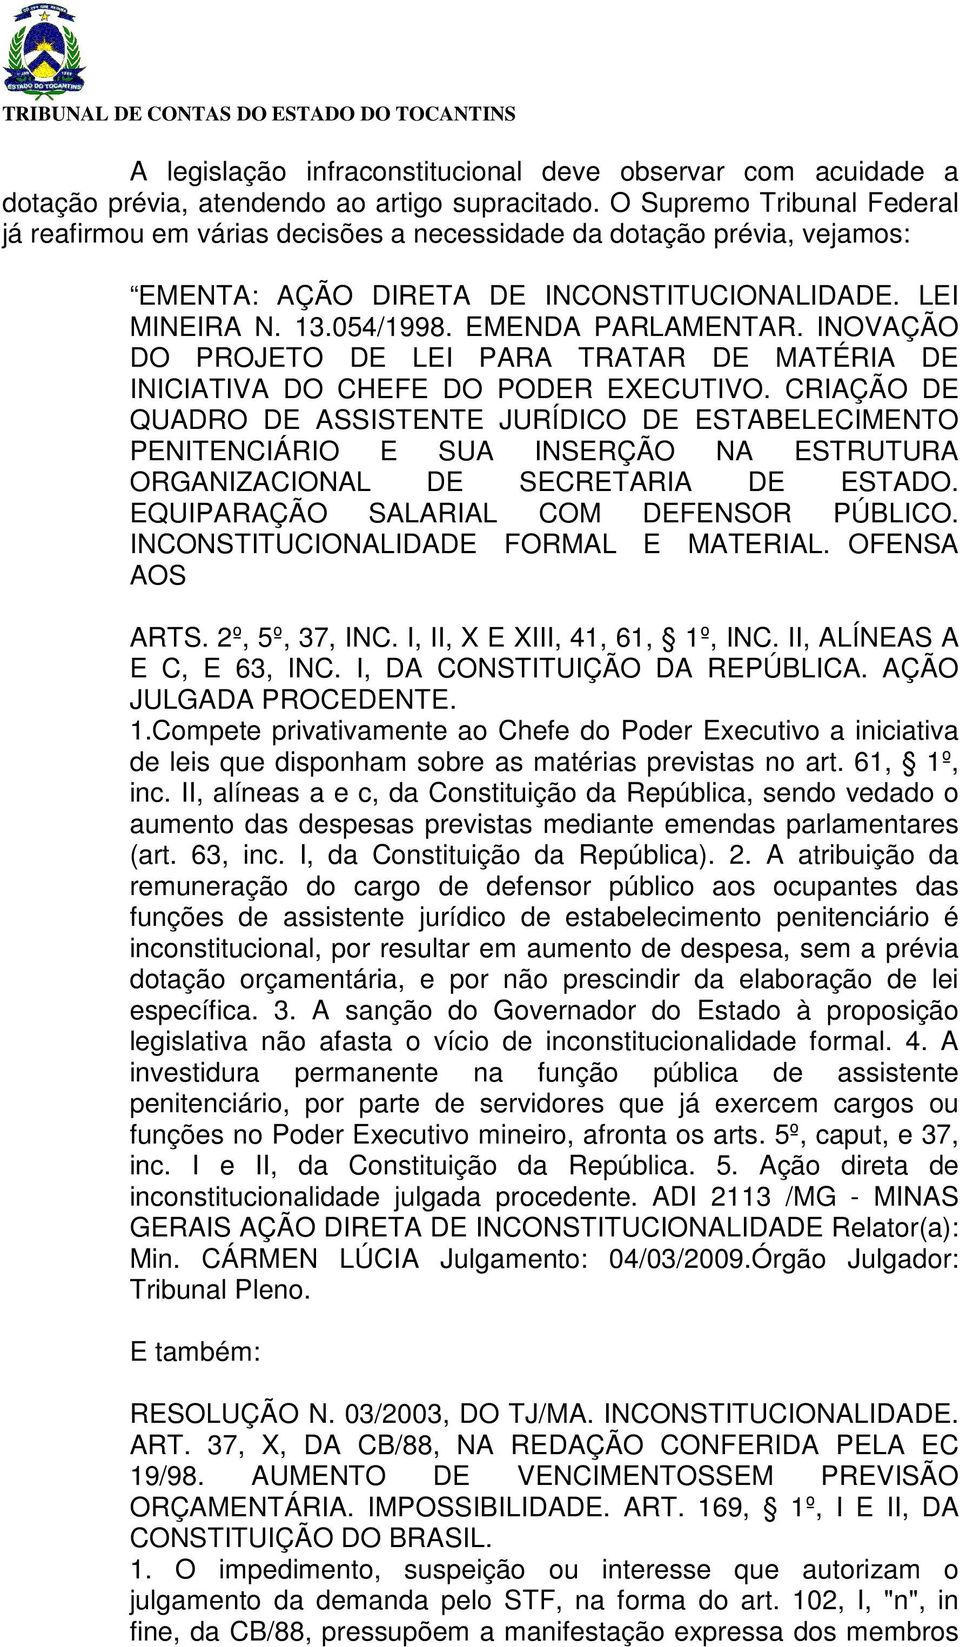 INOVAÇÃO DO PROJETO DE LEI PARA TRATAR DE MATÉRIA DE INICIATIVA DO CHEFE DO PODER EXECUTIVO.